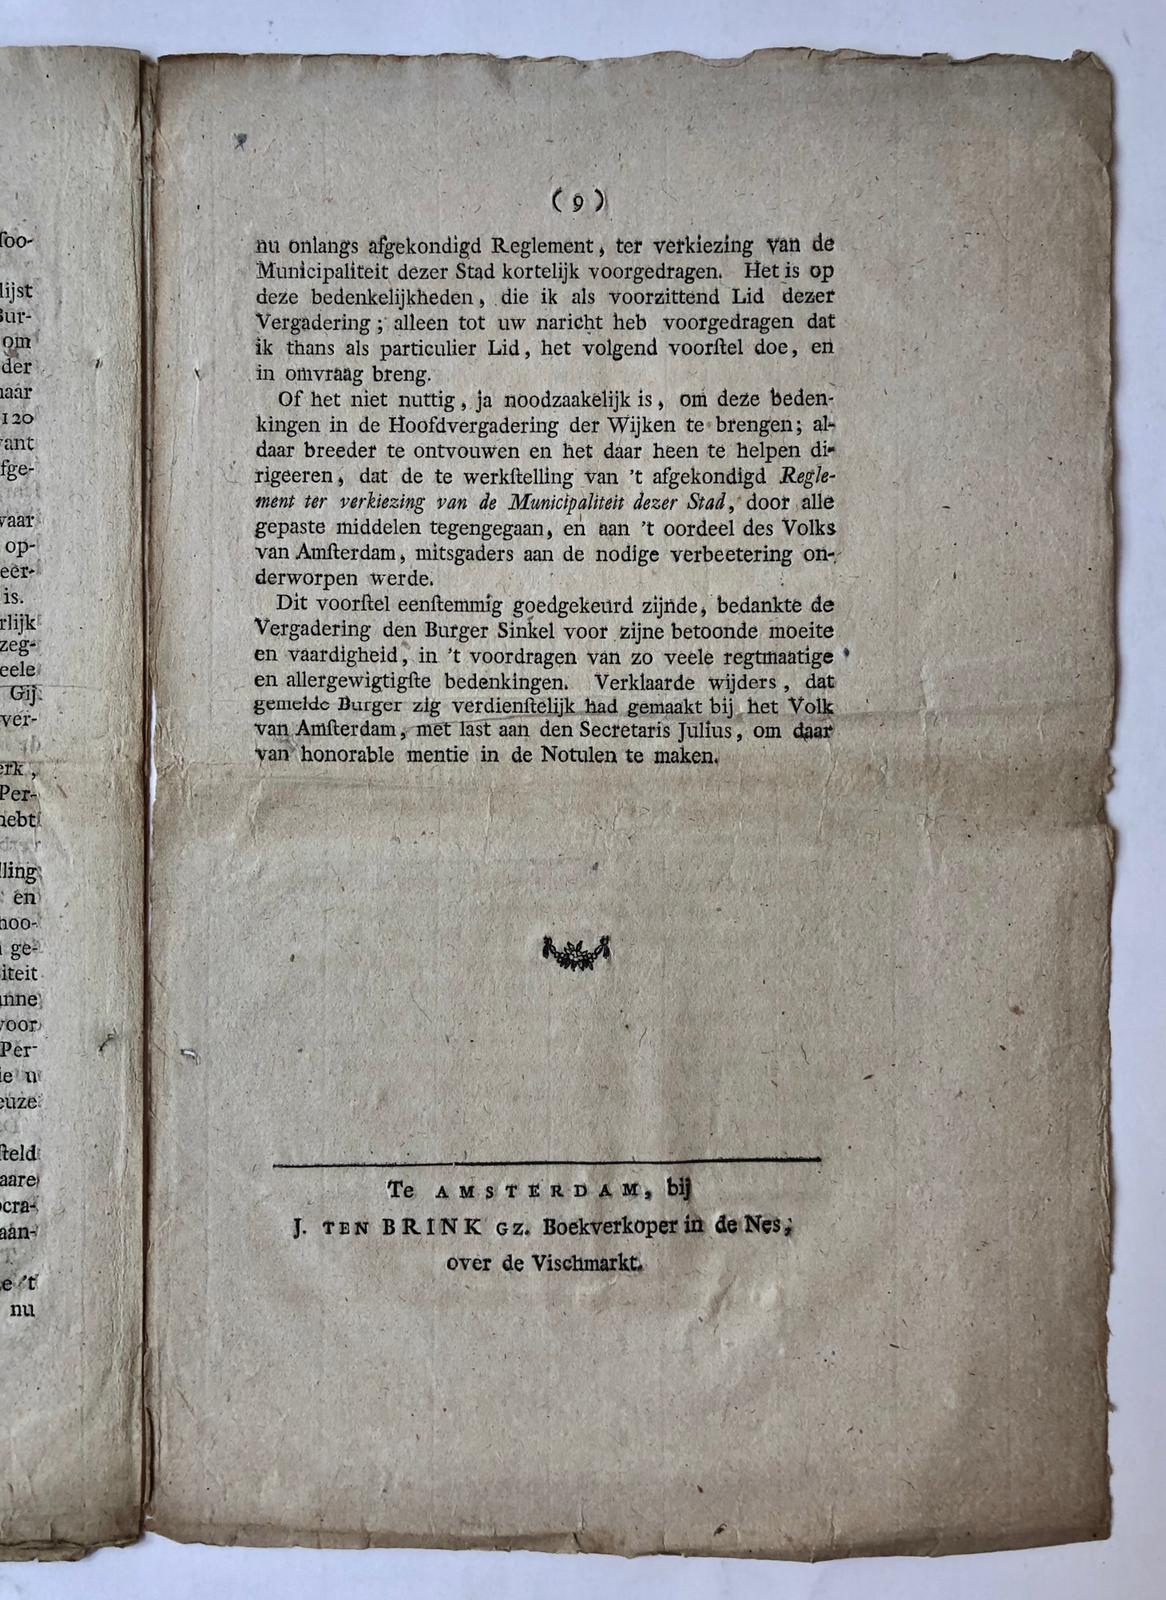 [Printed publication, Pamphlet 1795] “Redevoering door den burger B.S. Sinkel, als voorzittend lid gedaan, in de vergadering van Wijk 8, gehouden op Maandag den 13 April 1795”, folio, 9 p, gedrukt (bij J. ten Brink Gz te Amsterdam).